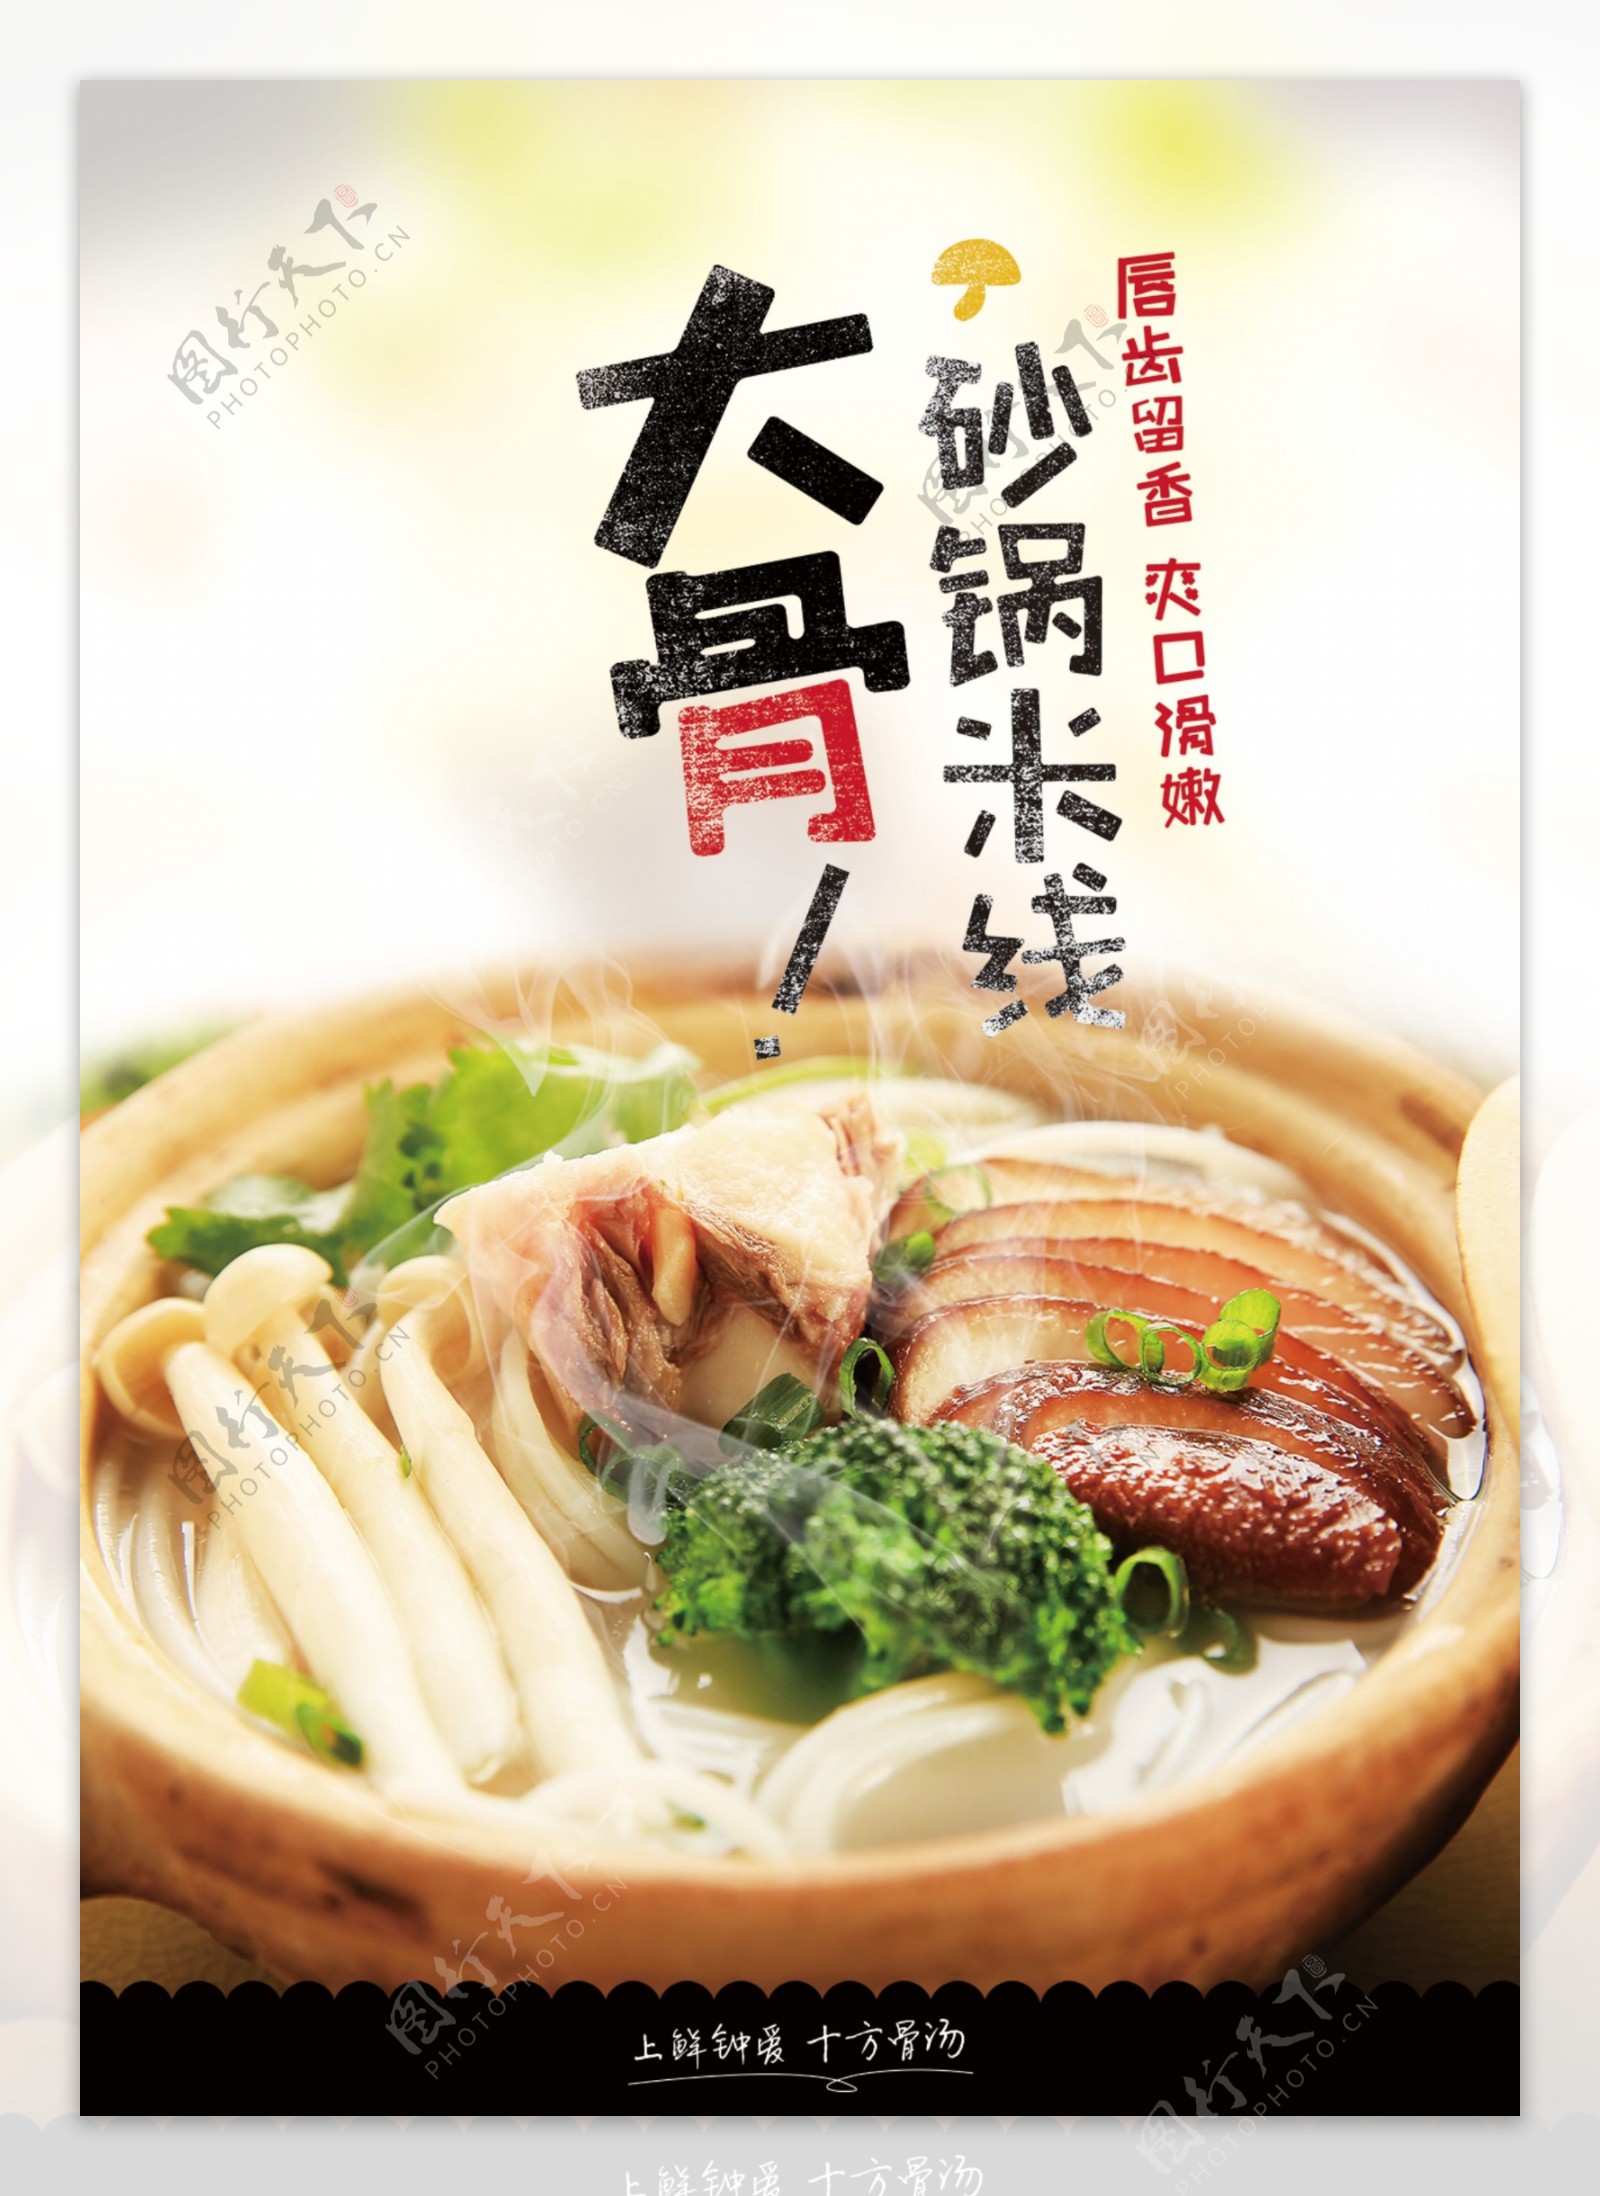 大骨砂锅米线美食宣传海报